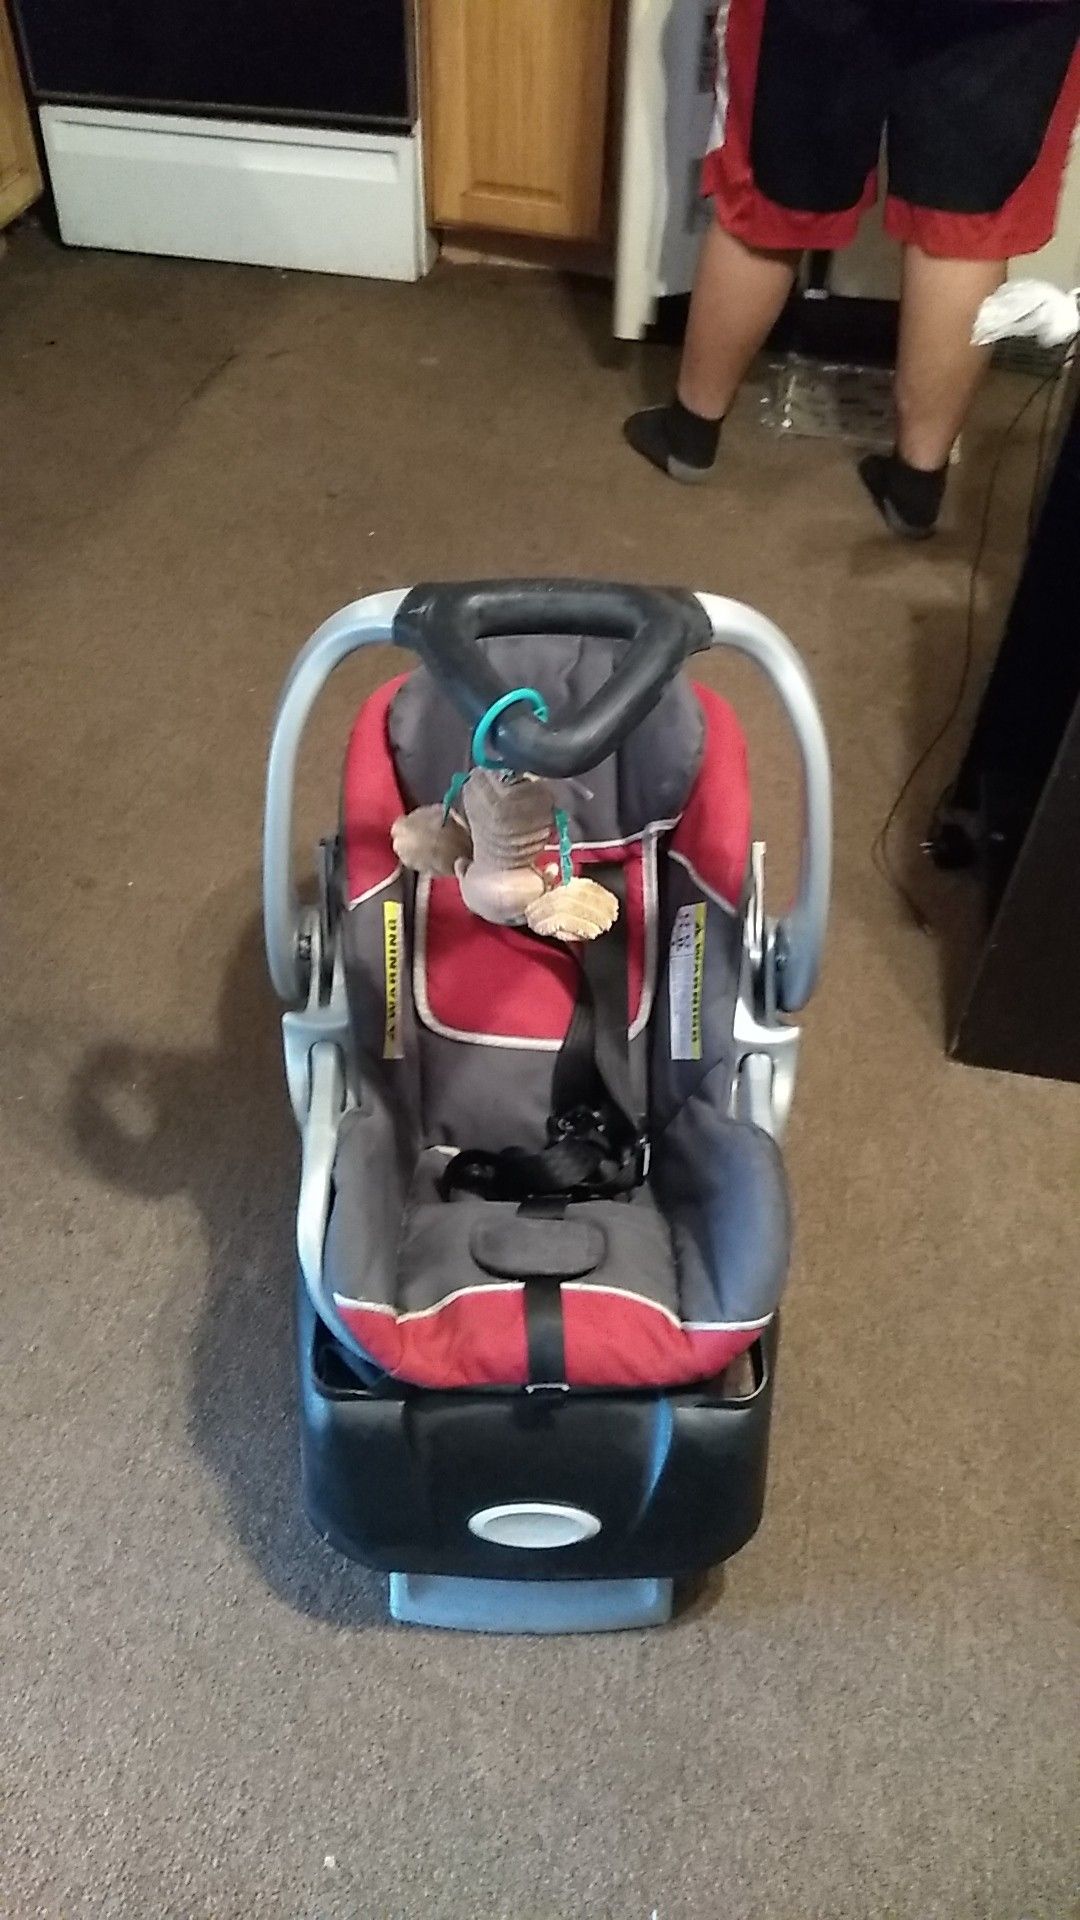 Baby Car Chair